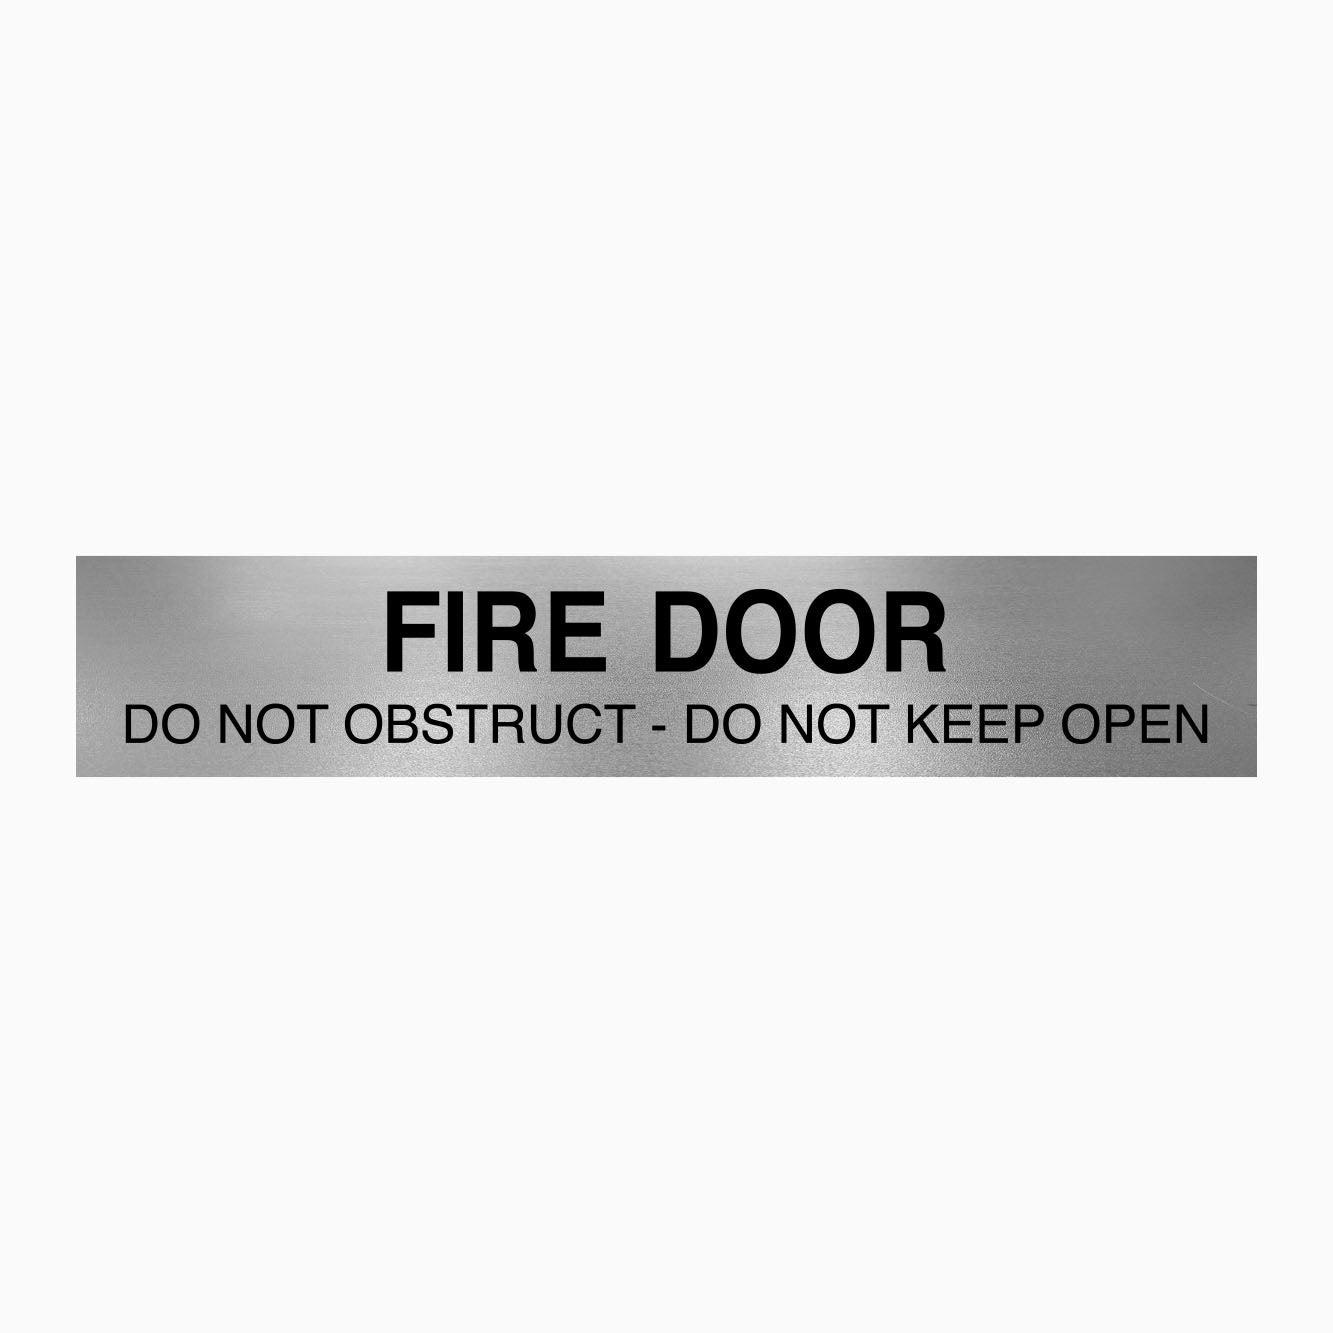 FIRE DOOR SIGN DO NOT OBSTRUCT - DO NOT KEEP OPEN - GET SIGNS